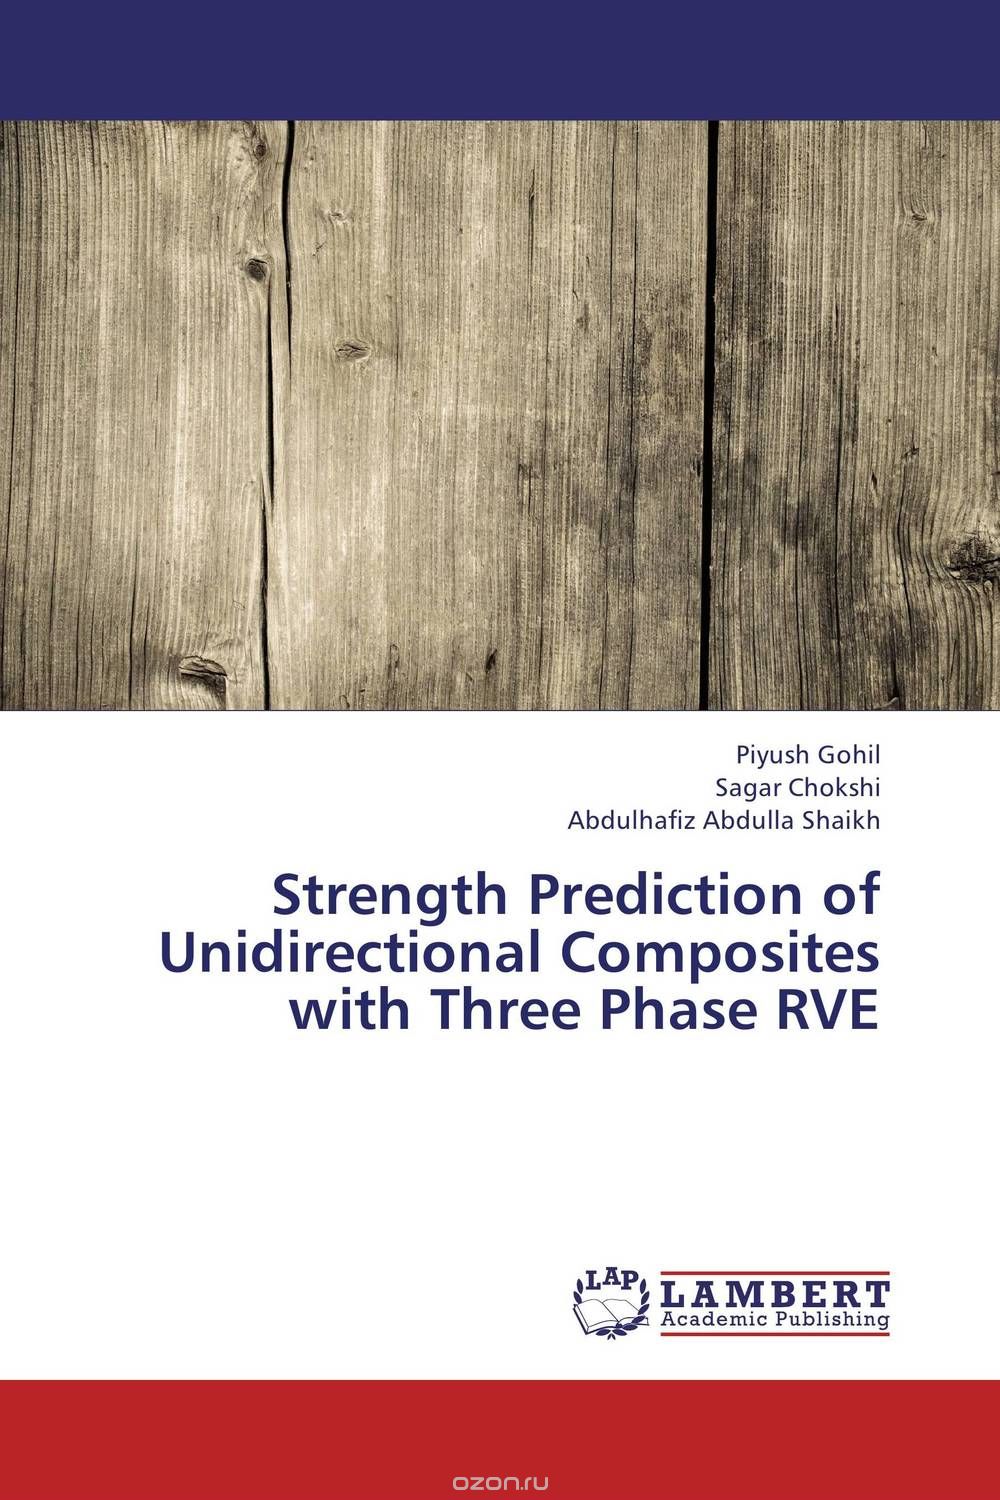 Скачать книгу "Strength Prediction of Unidirectional Composites with Three Phase RVE"